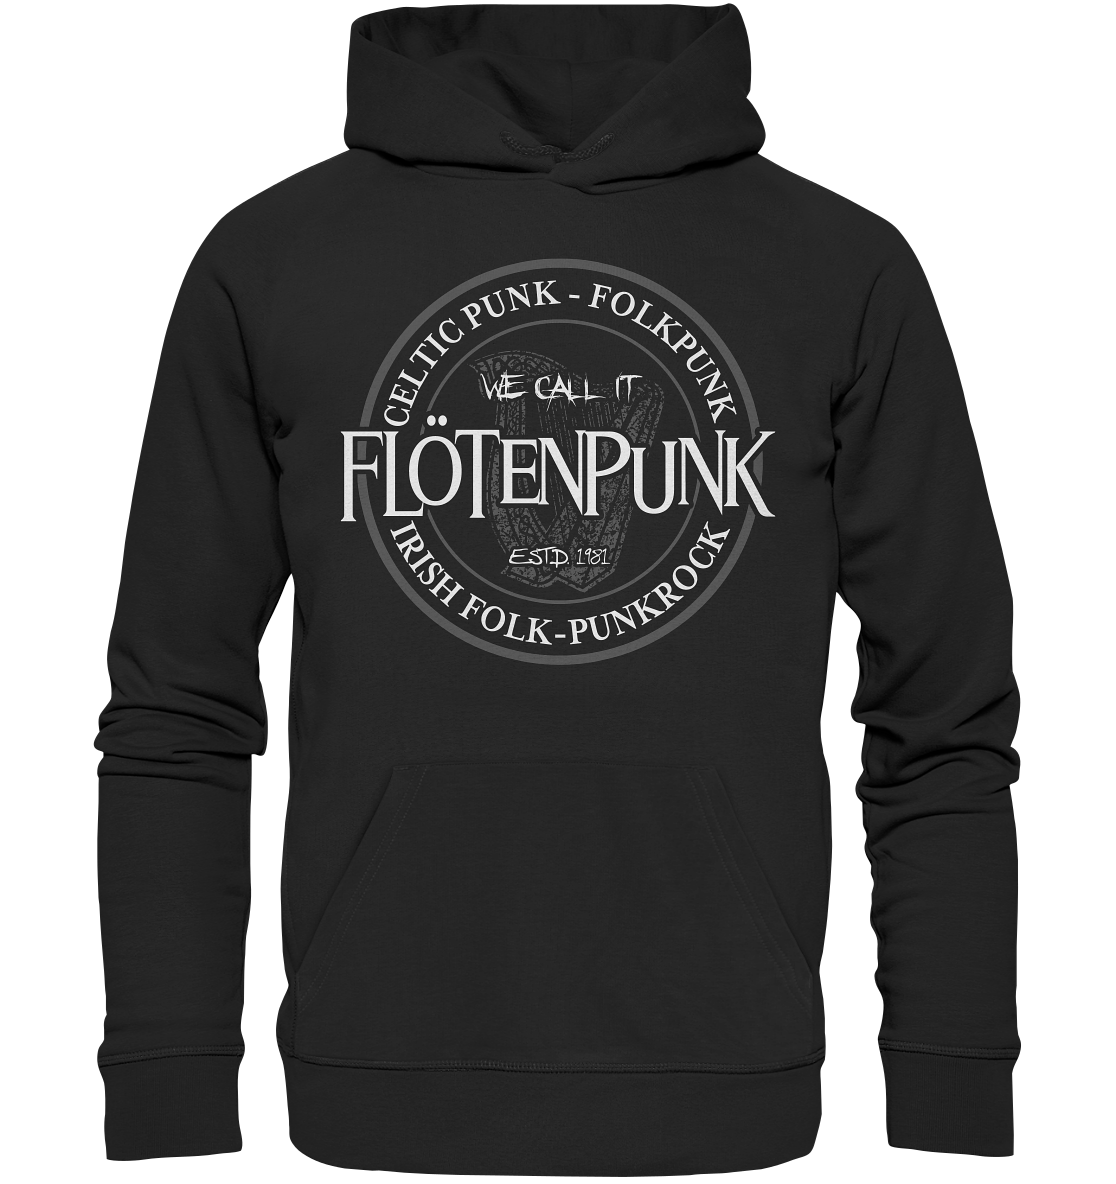 We call it "Flötenpunk" - Premium Unisex Hoodie